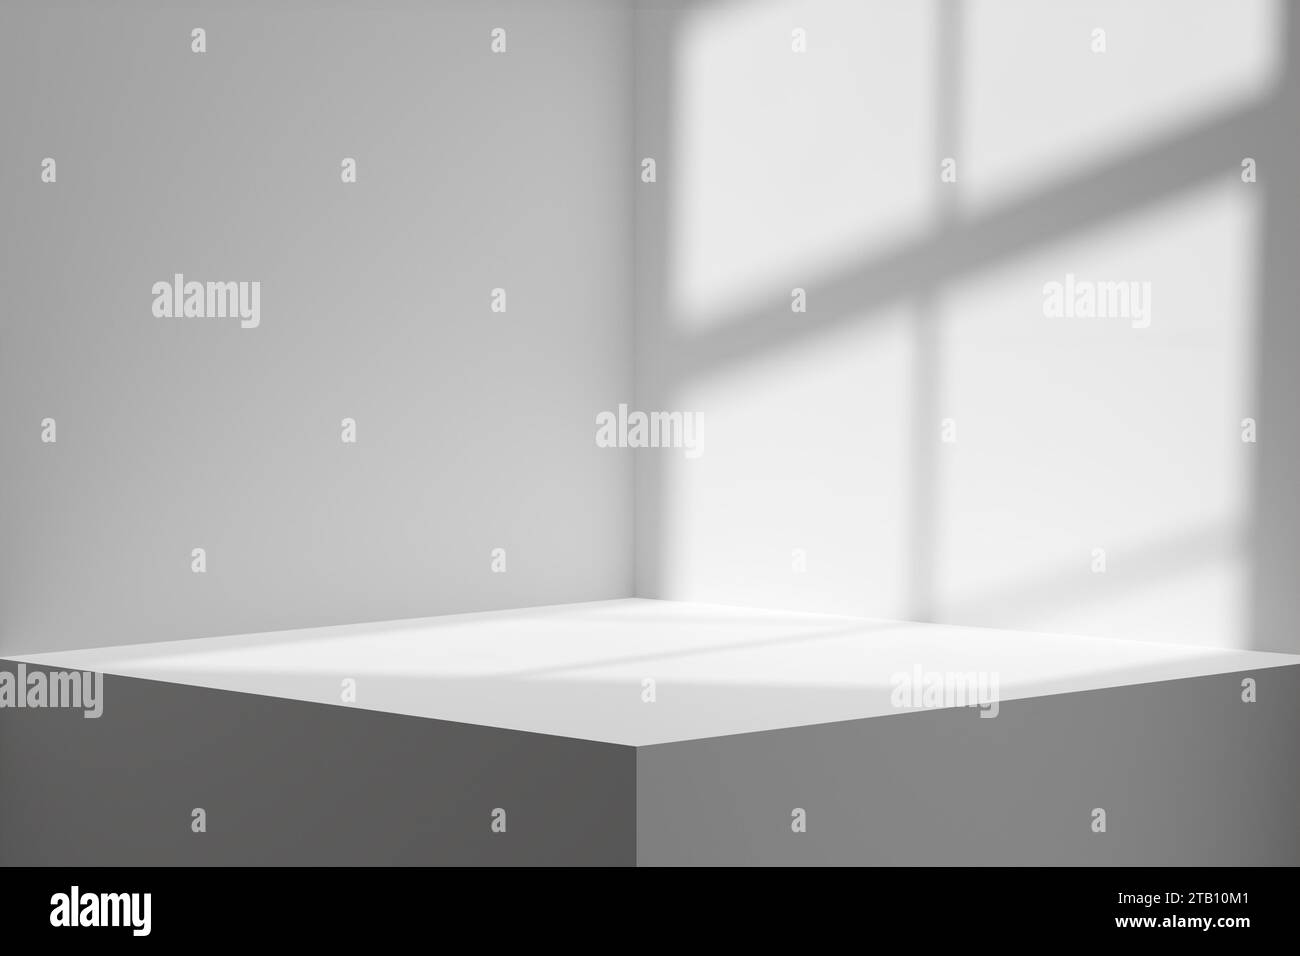 Podium blanc vide ou plate-forme avec lumière de fenêtre et ombre. Modèle de présentation du produit. Rendu 3D. Banque D'Images